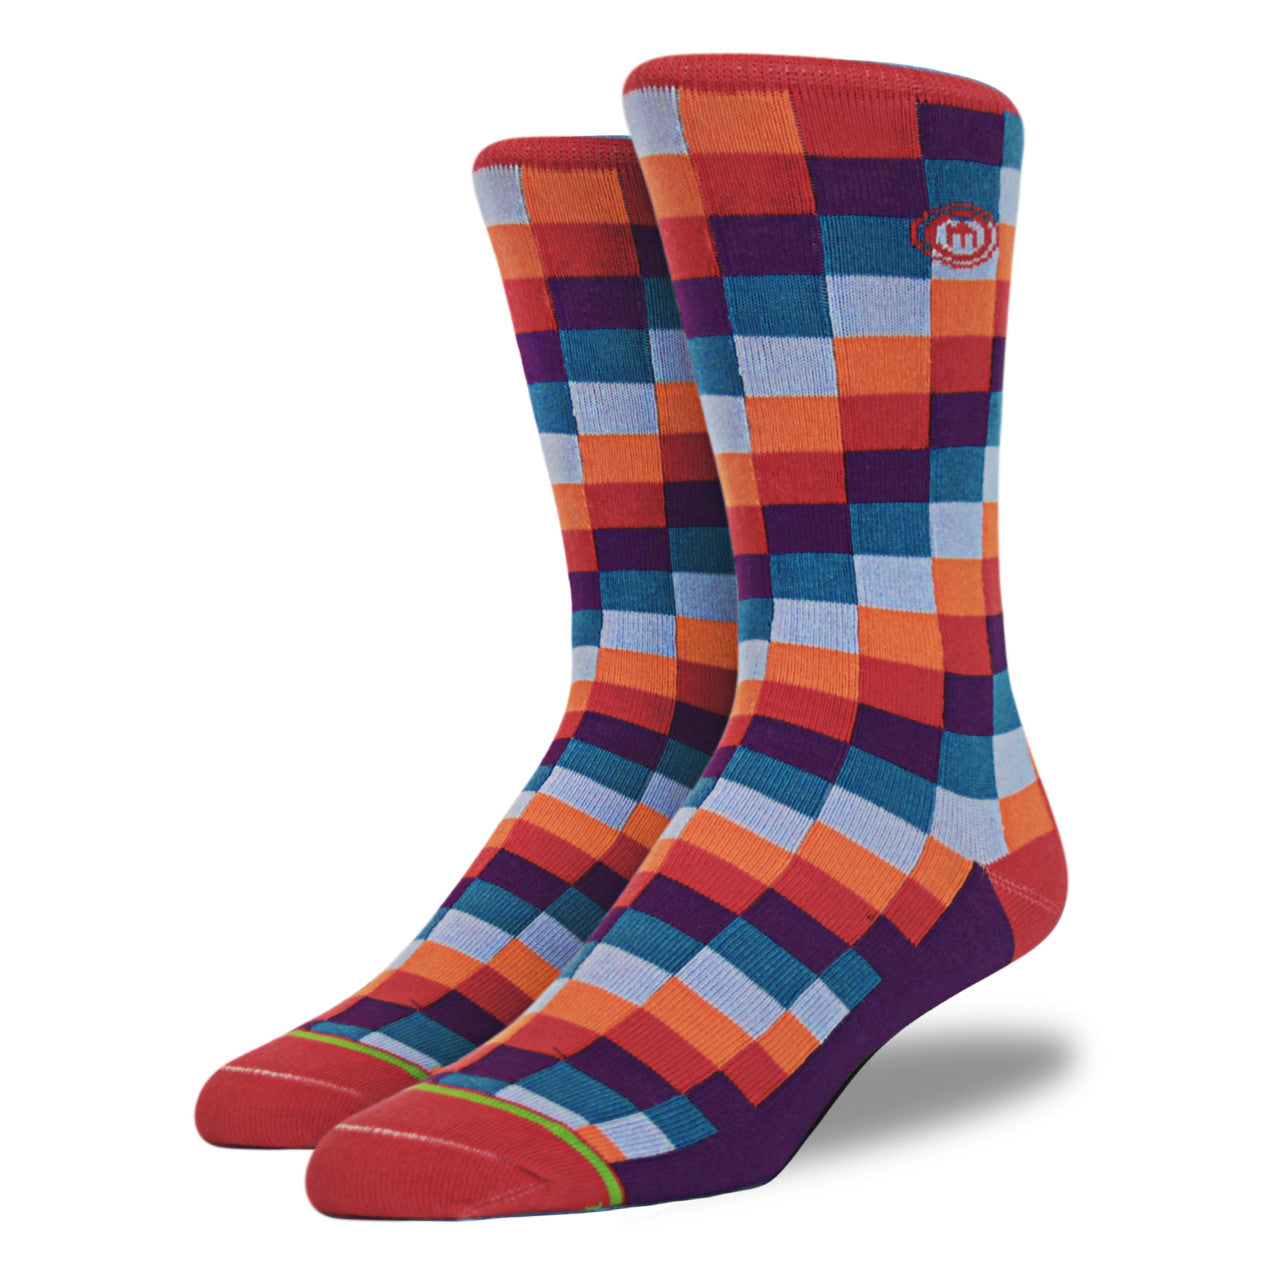 The Colton - Men's Digital Block Socks